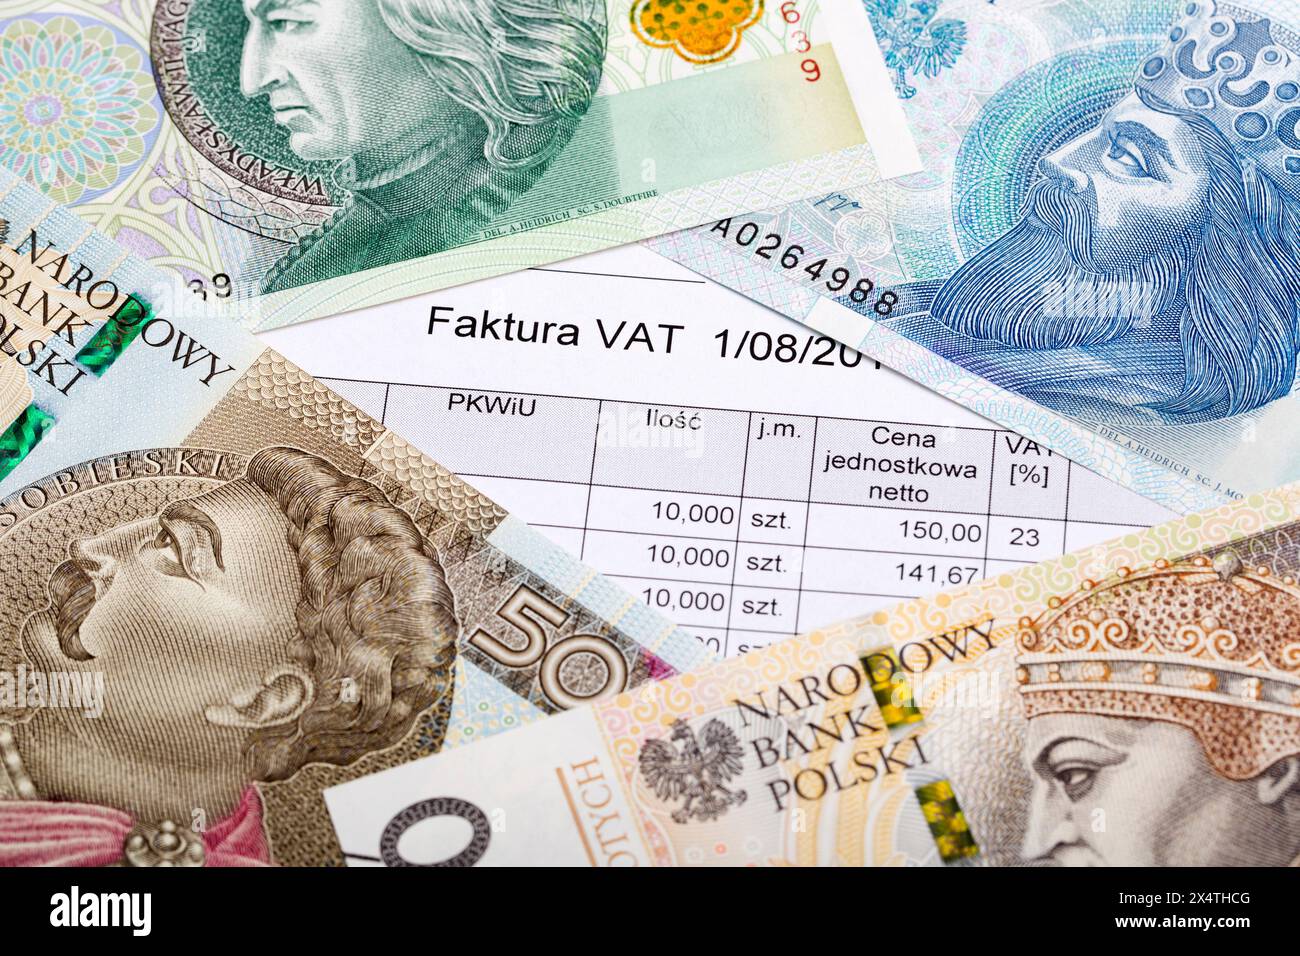 Fattura IVA sullo sfondo del denaro polacco - Zloty Foto Stock